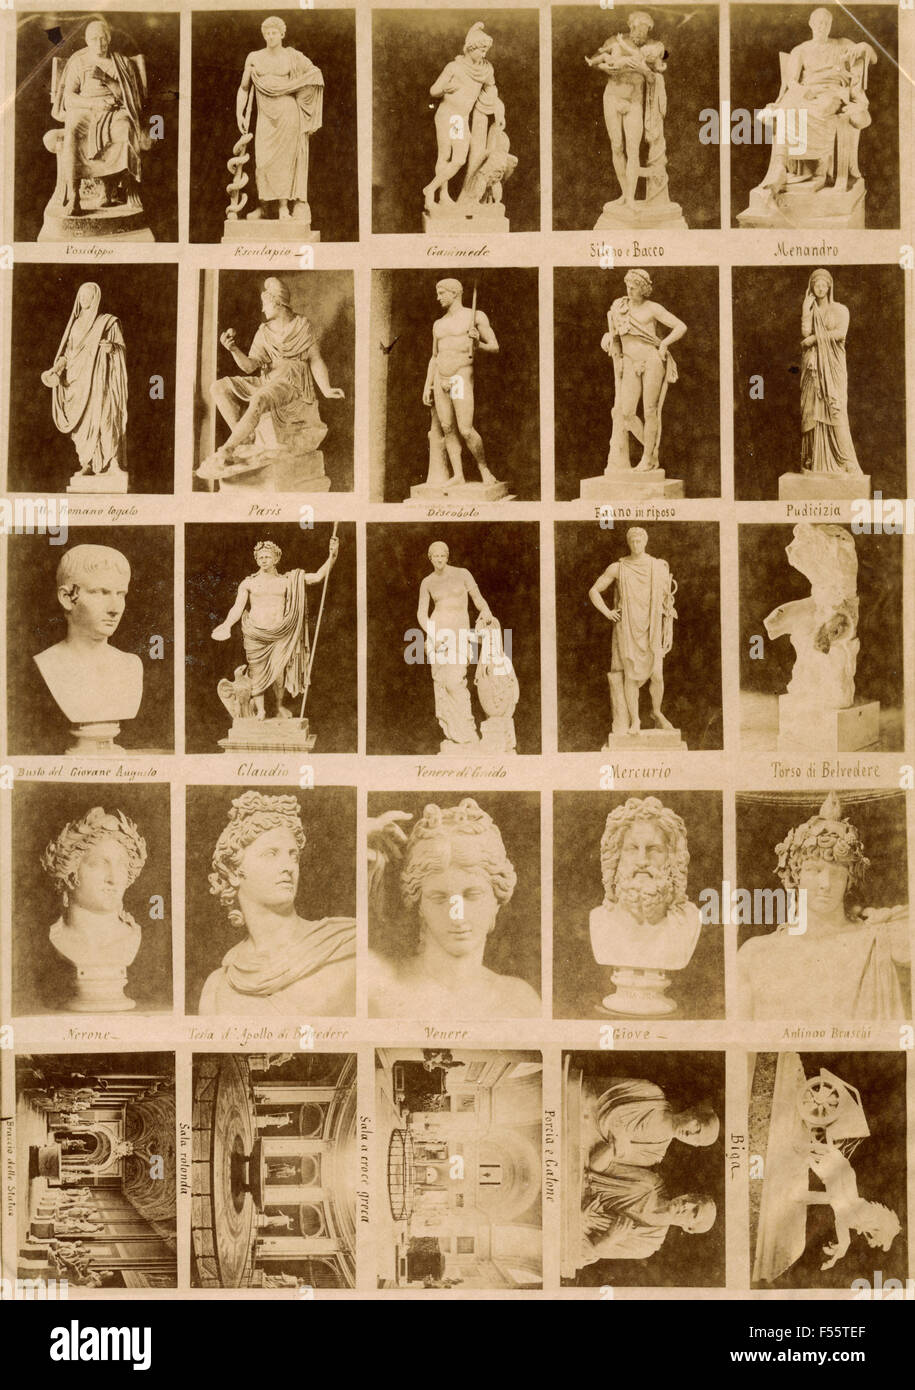 Museos vaticanos: publicidad de imágenes Foto de stock